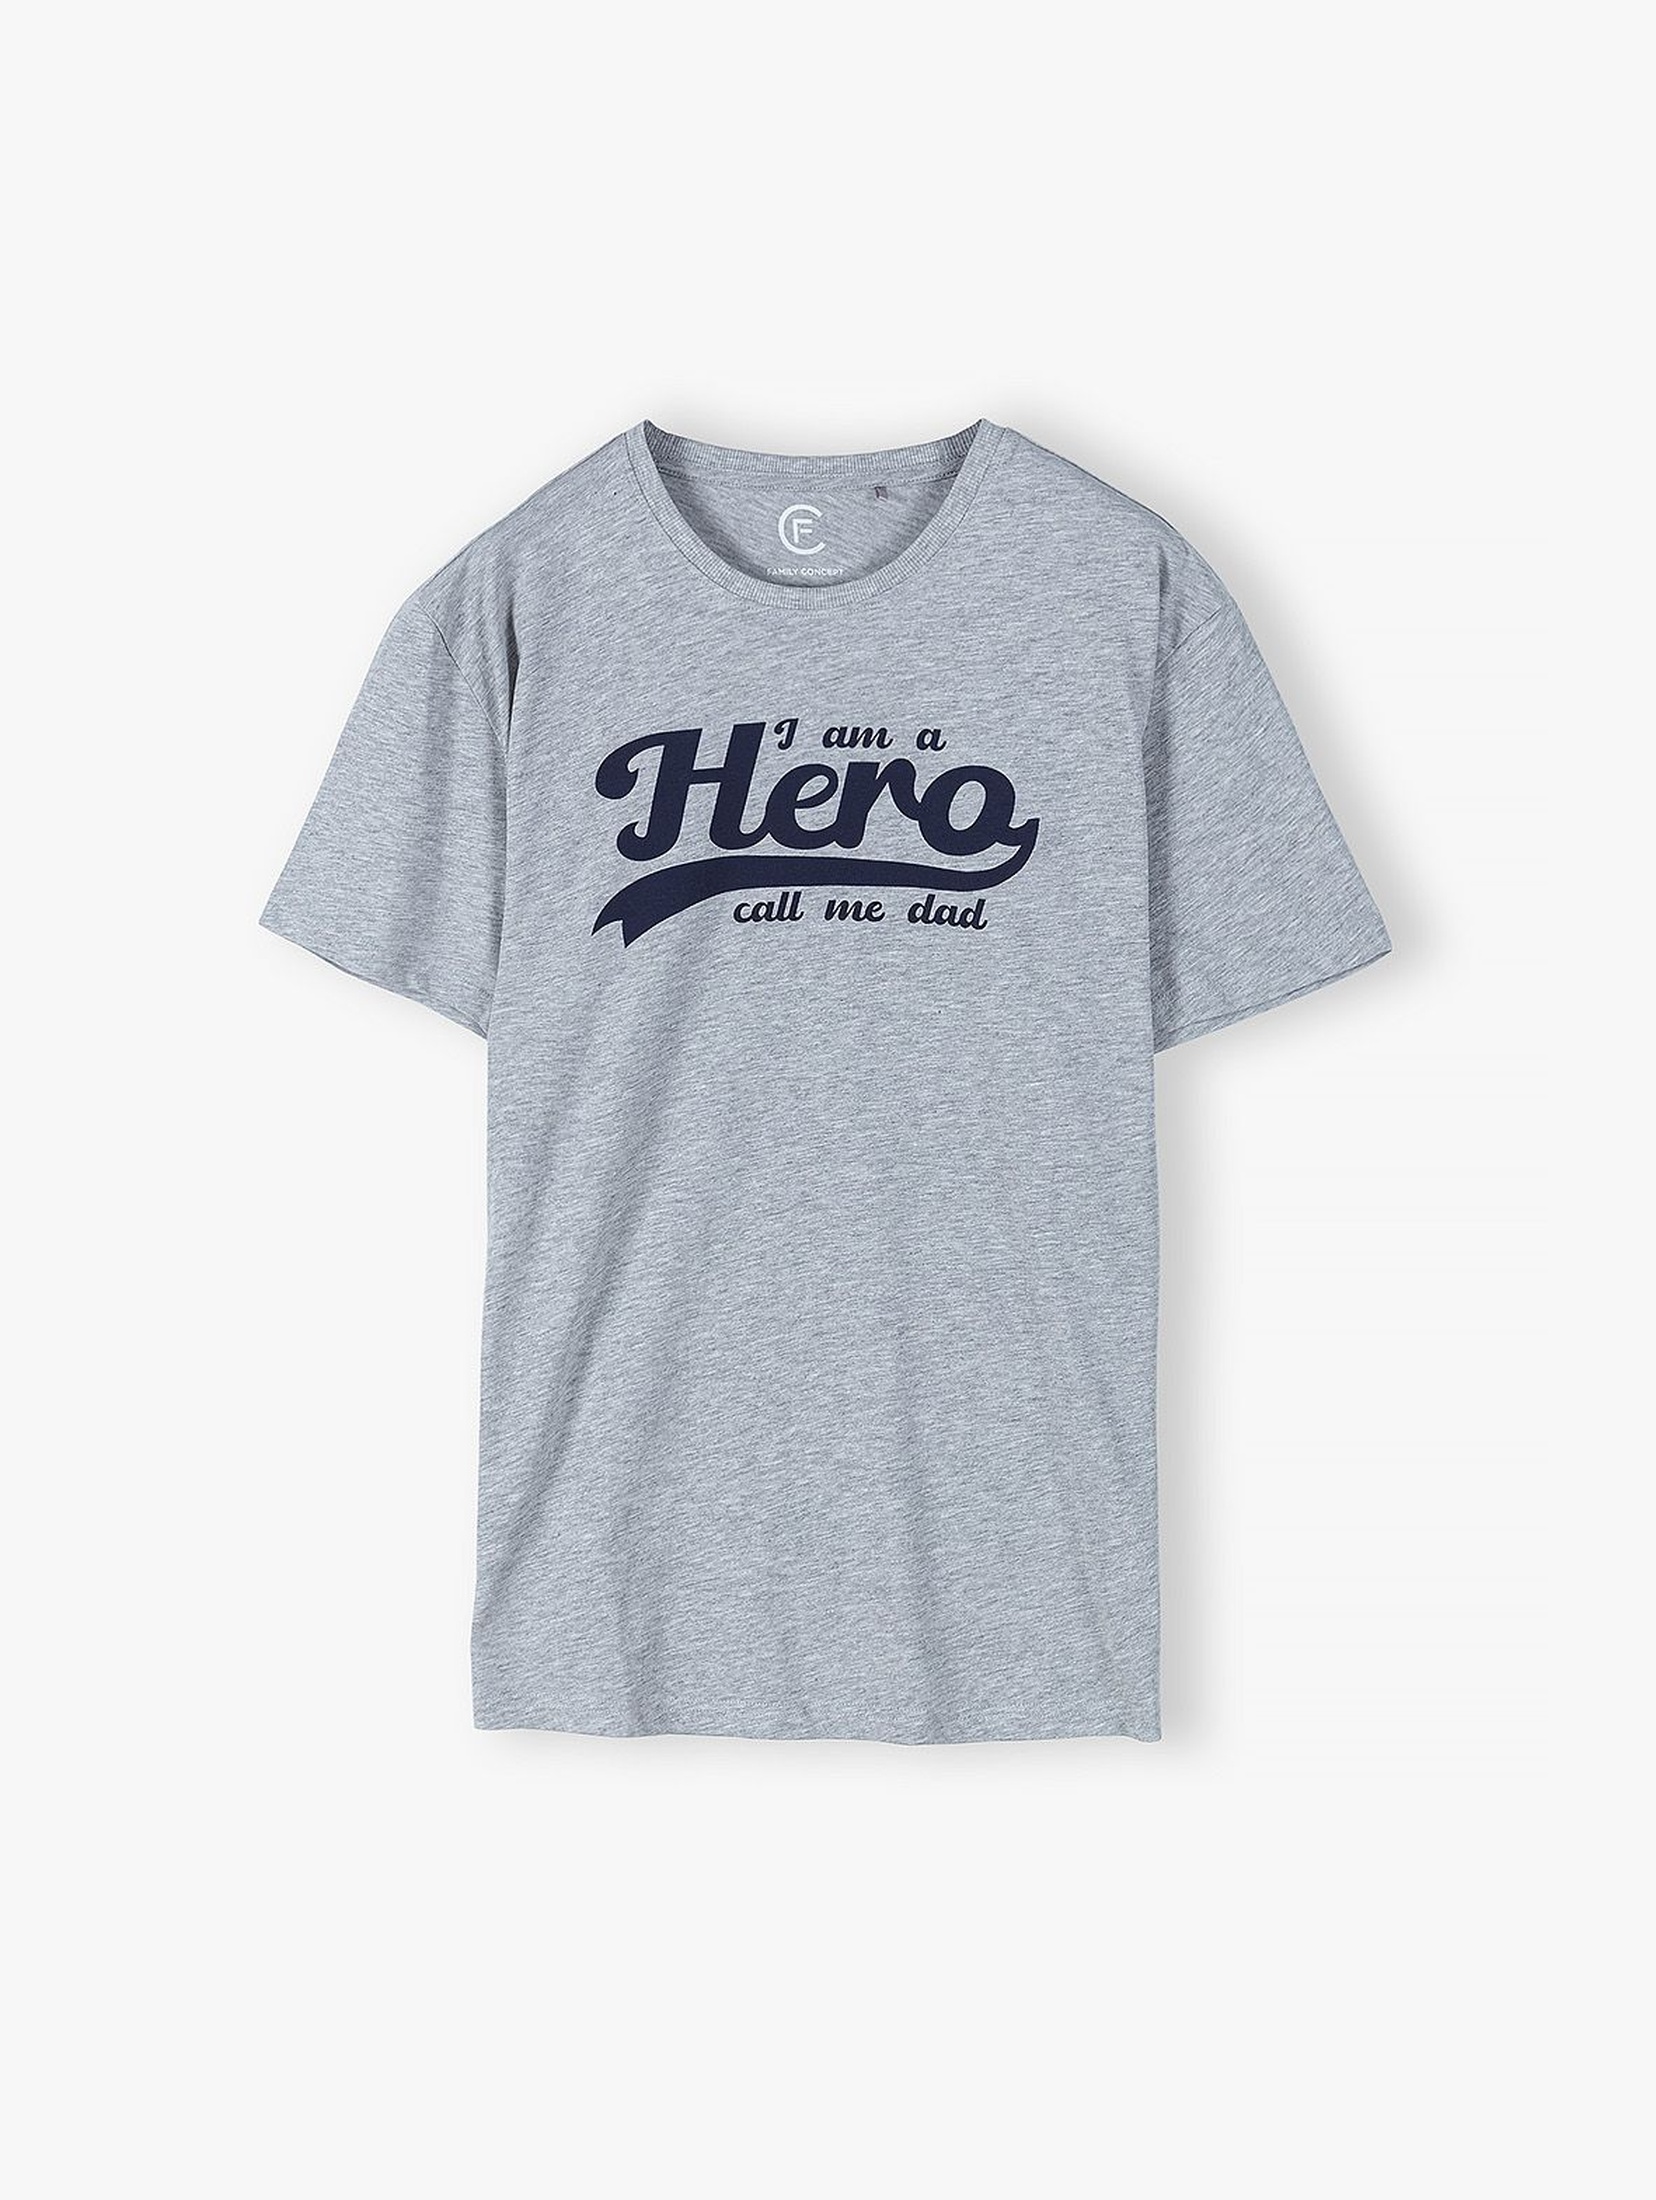 T-shirt dla mężczyzny szary z napisem- Hero - ubrania dla całej rodziny